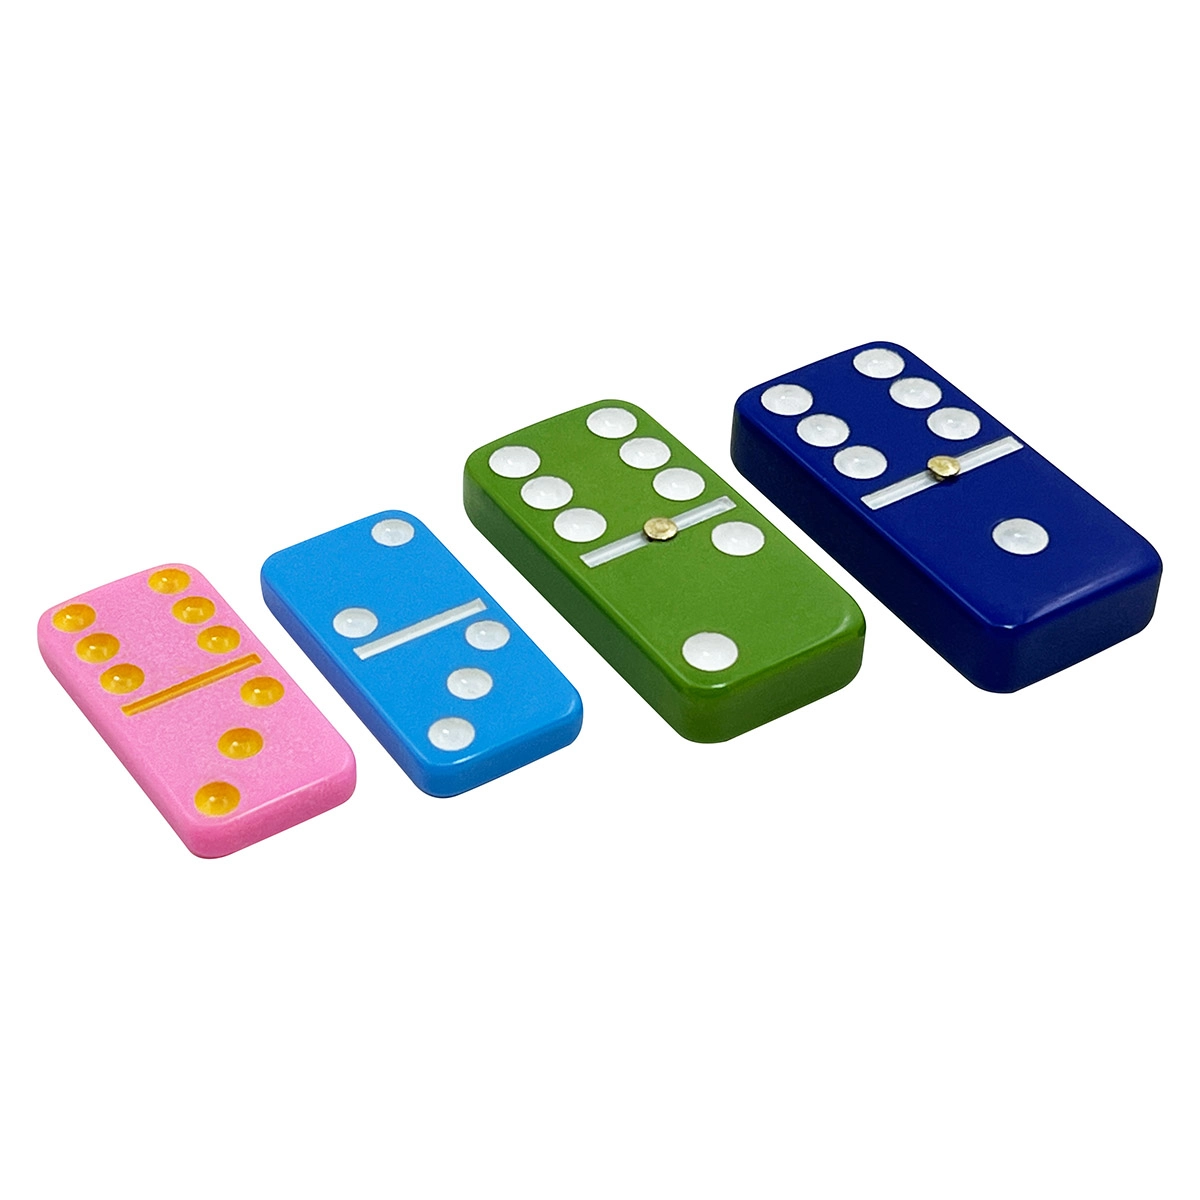 Peças de dominó coloridas personalizadas